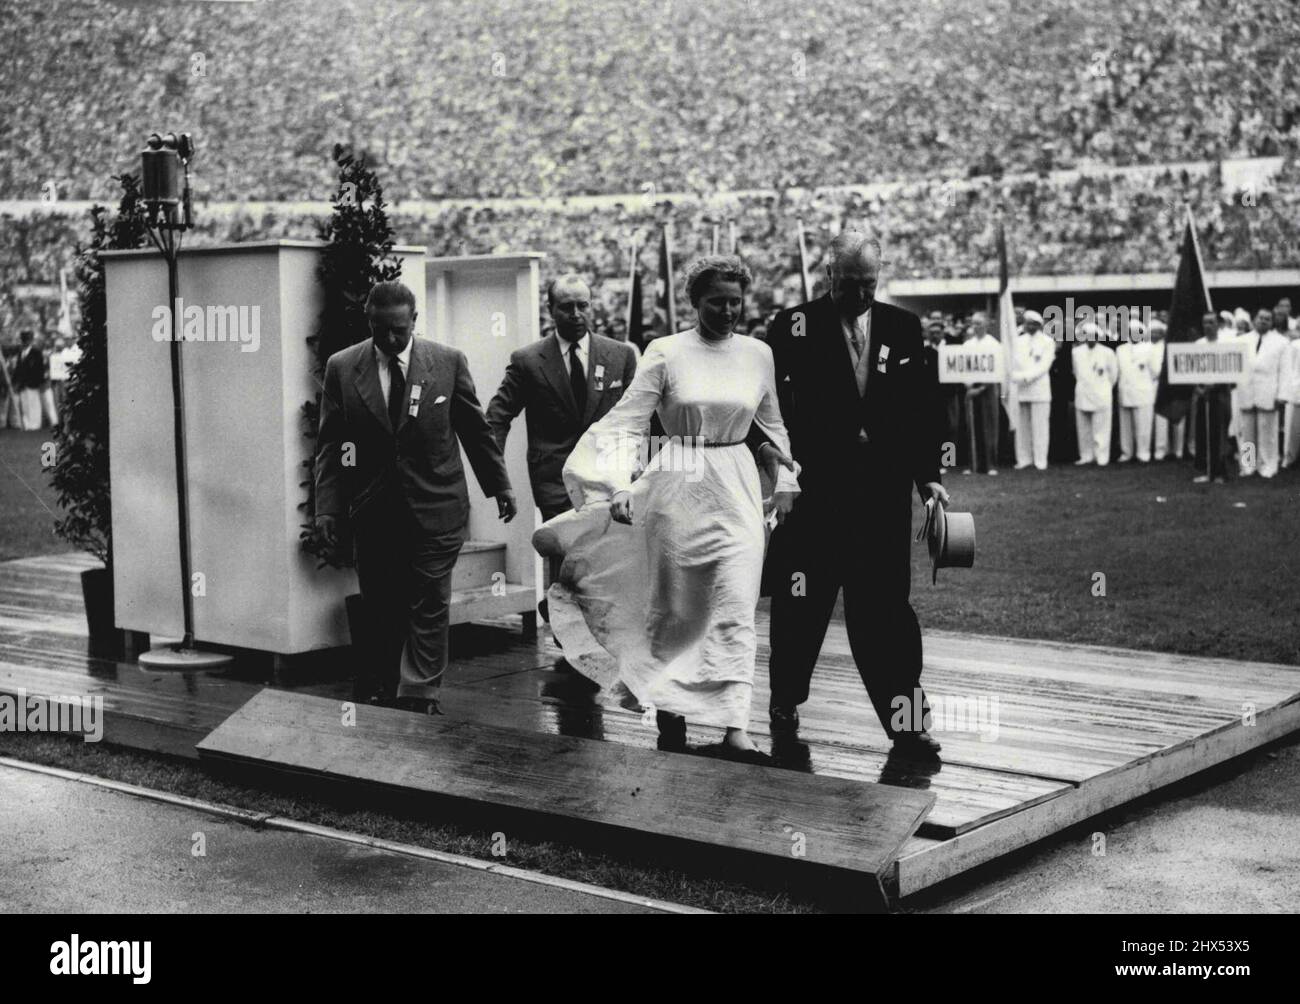 Woman in White donne un sensationnel début aux Jeux Olympiques - Une femme, vêtue de robes blanches coulées, est escortée de la tribune dans le stade ici pendant la cérémonie d'ouverture des Jeux Olympiques de 1952. La femme, Barbara Ratraut Player, une étudiante d'Allemagne de l'Ouest, a fait un trait fou autour de la piste et a couru jusqu'à la tribune, où elle a saisi le microphone et a tenté de s'adresser à la foule vaste. Elle a obtenu Mesdames et Messieurs en anglais quand elle a été saisie par des fonctionnaires et emmenée. 20 juillet 1952. Banque D'Images